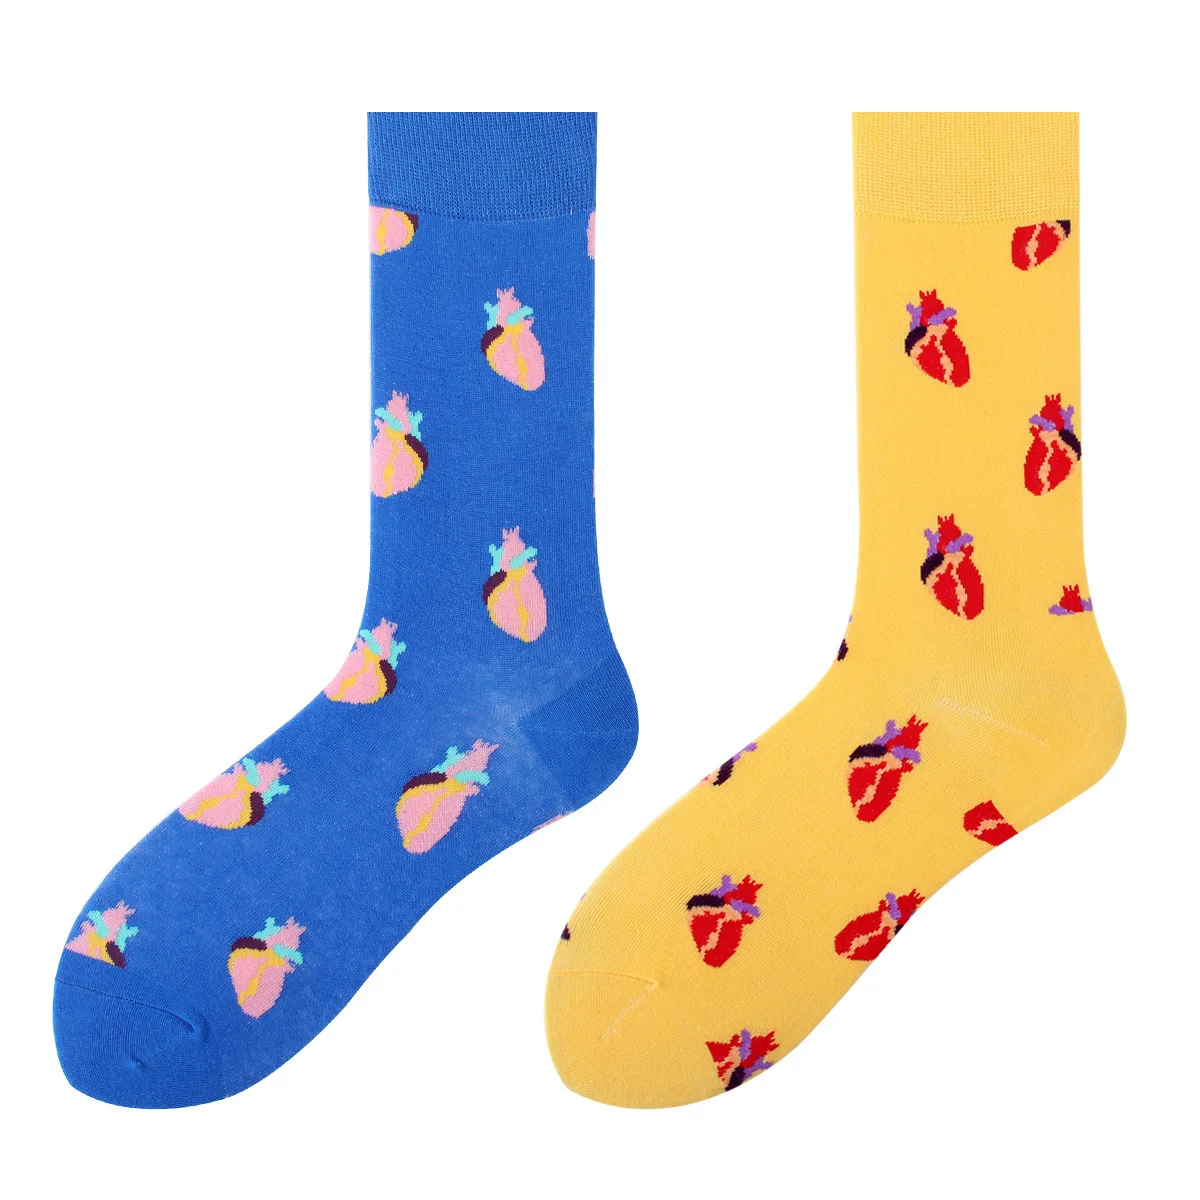 PEONFLY 1 пара модные Забавные милые носки Harajuku мужские свежие фрукты клубники дизайн счастливые носки чесаный хлопок Sokken